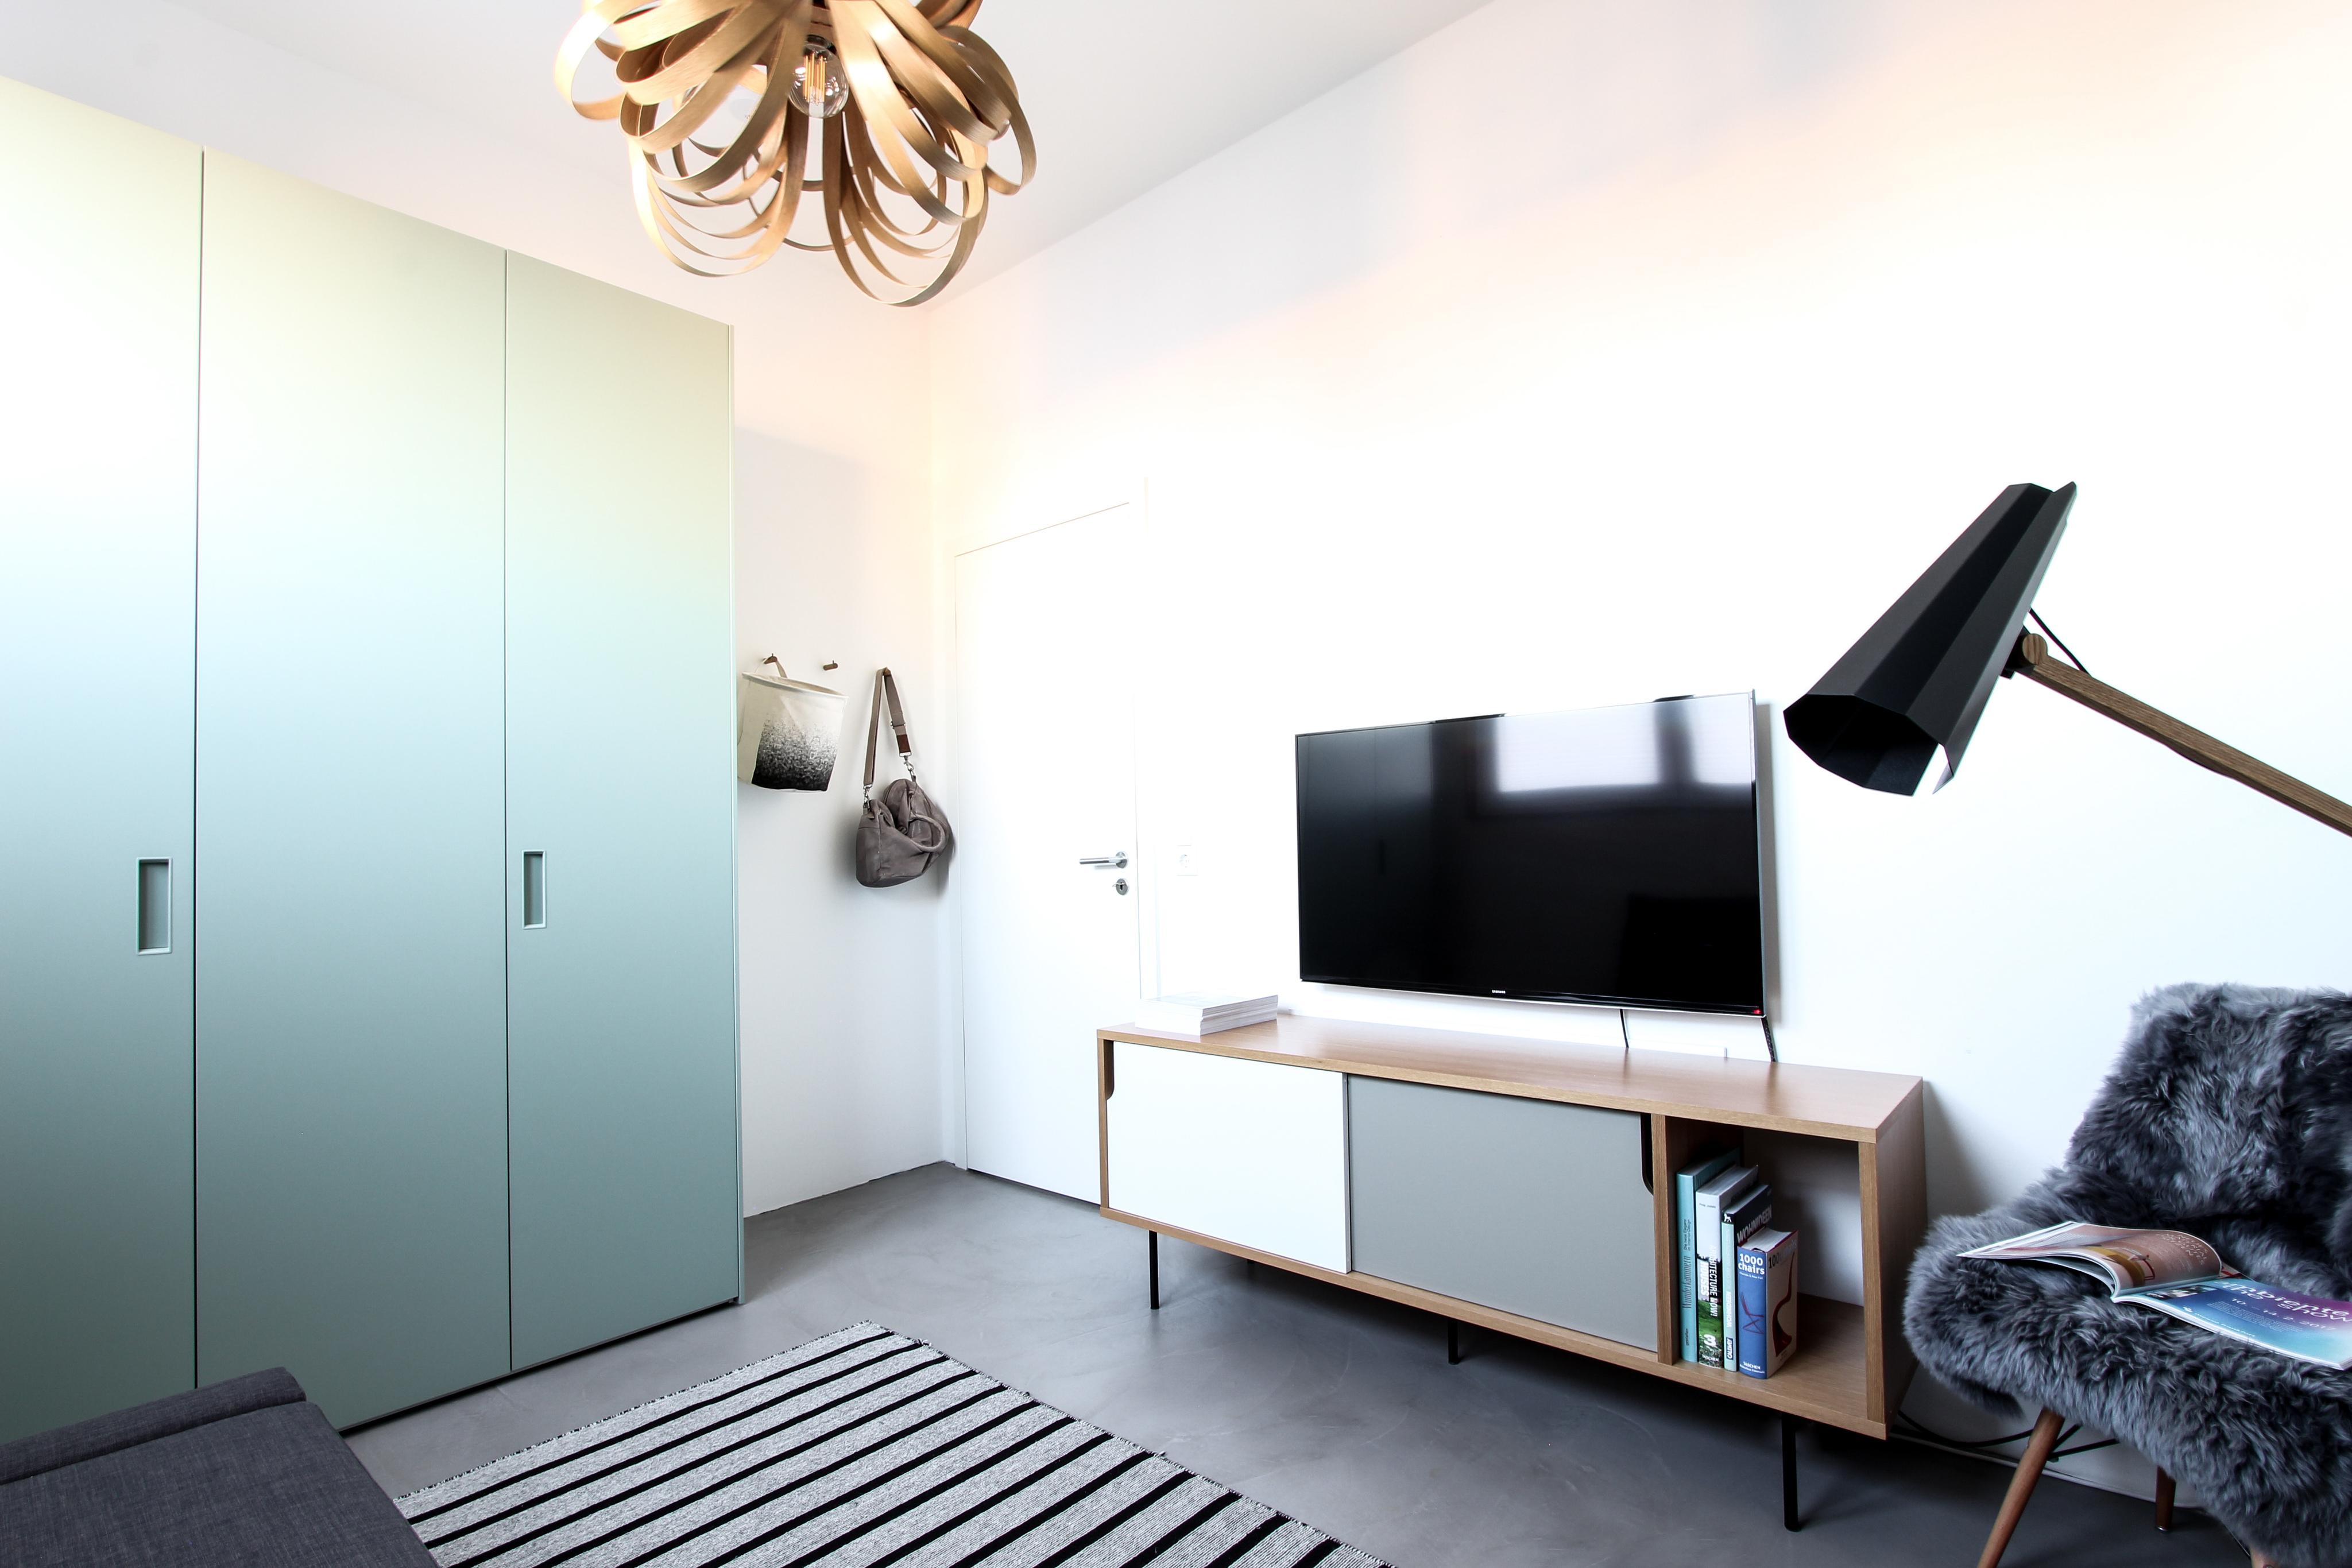 Gästezimmer mit Retro-Charm #teppich #sideboard #kleiderschrank ©EXTRAVIEL office & home design